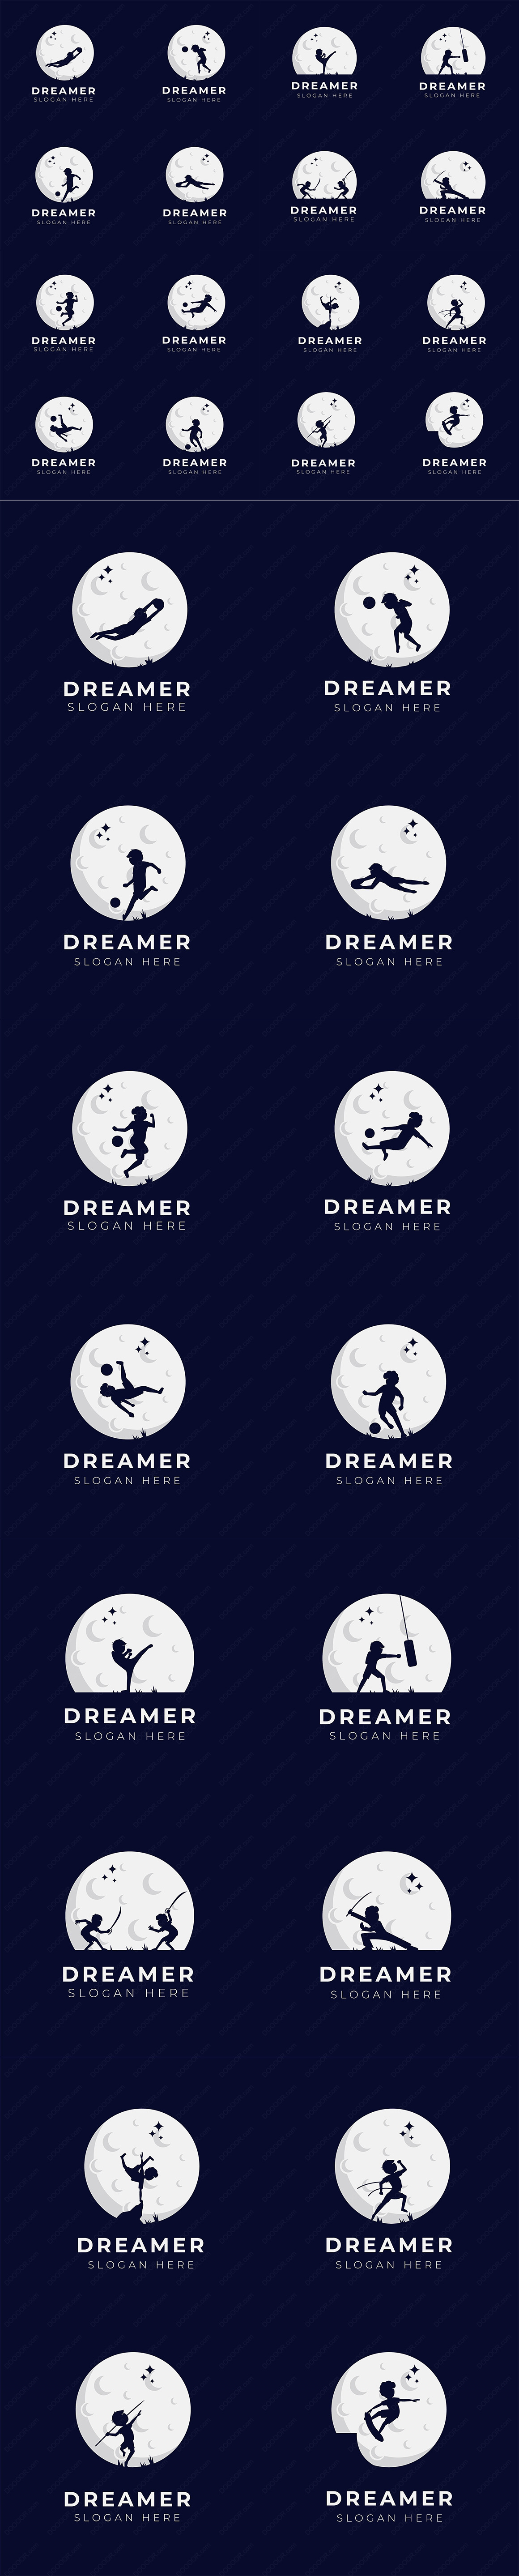 16款孩子的梦想儿童体育运动剪影与月球矢量插画LOGO模板素材.jpg